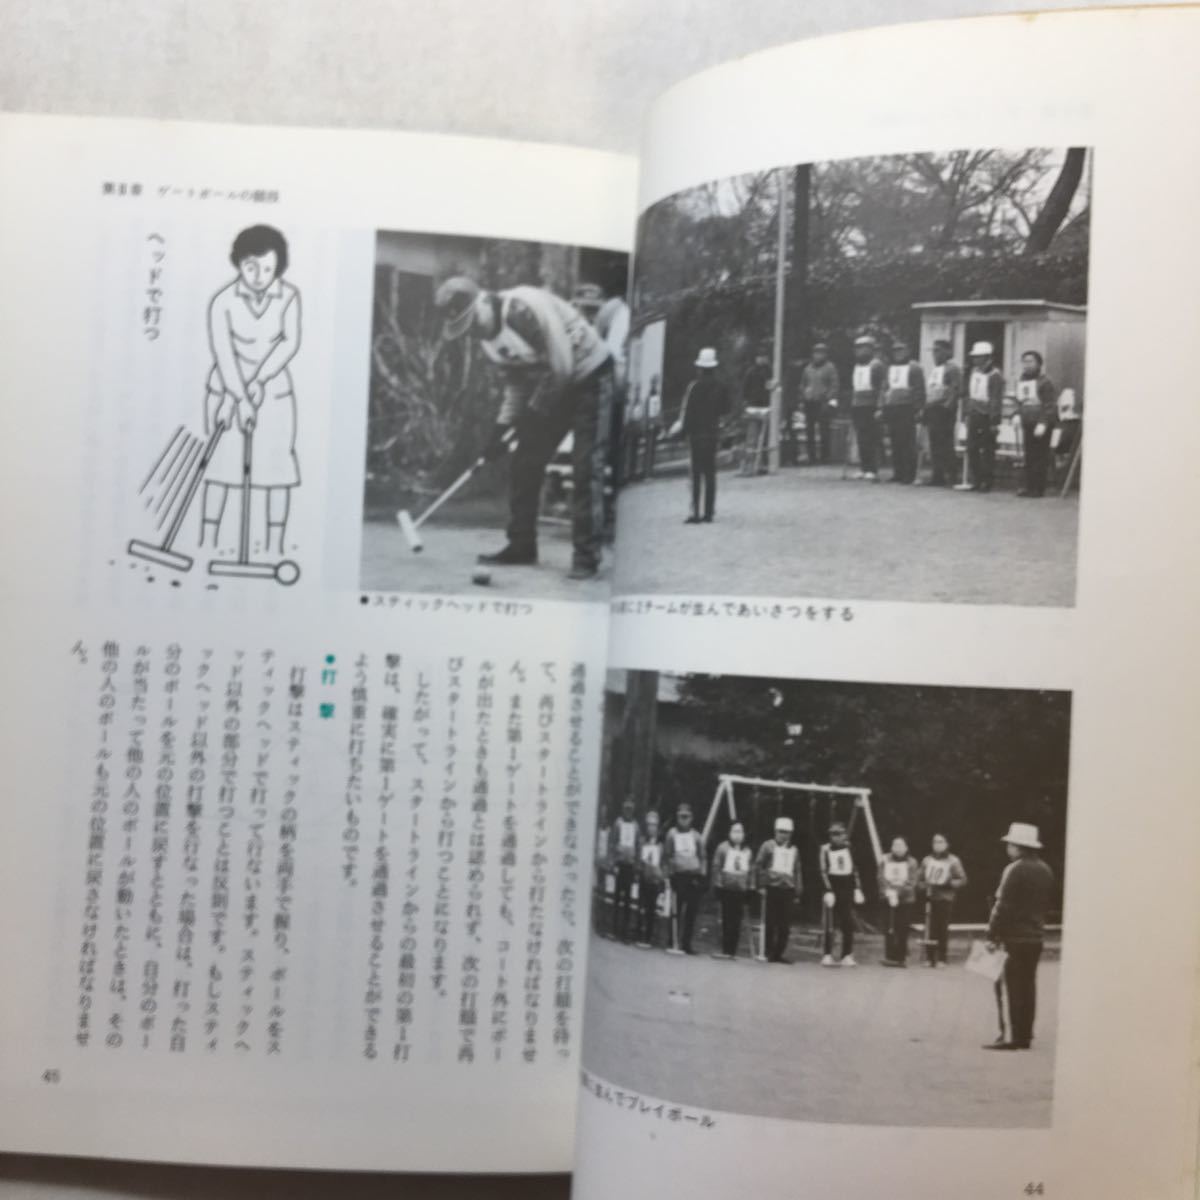 zaa-225♪ゲートボール―これからゲートボールを志す人のために (ドゥスポーツシリーズ) 増田 靖弘 (著)単行本 1984/1/1_画像6